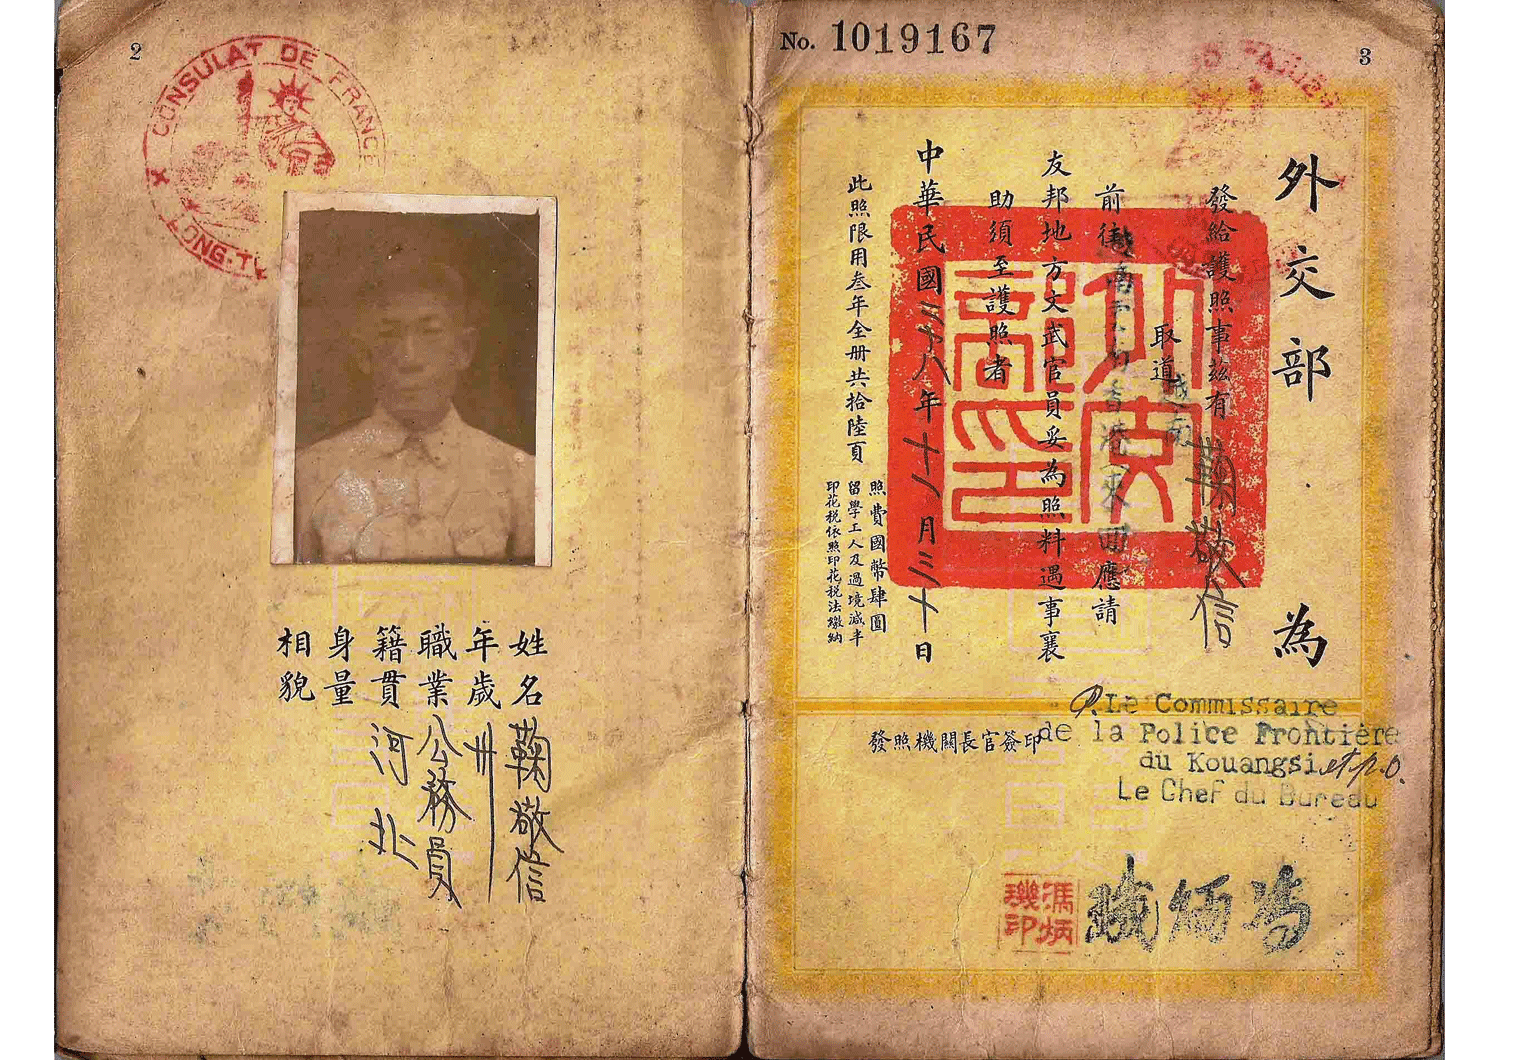 WW2 Chinese passport